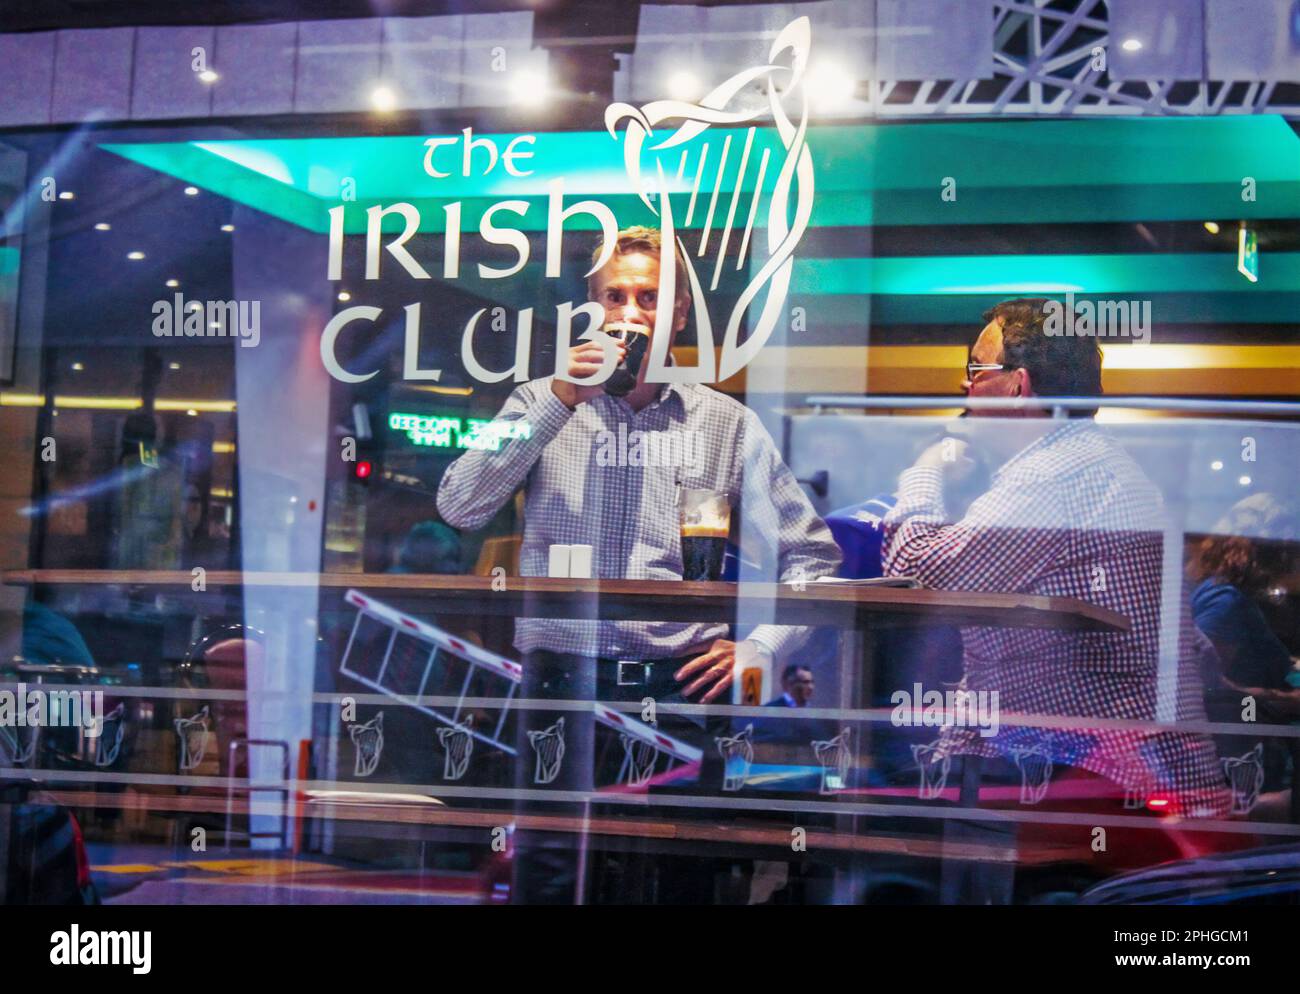 2015- 03 Brisbane Australie - Street Photography in window of Irish club - deux hommes à table par fenêtre buvant de la bière sombre- réflexions de la ville dans le vent Banque D'Images